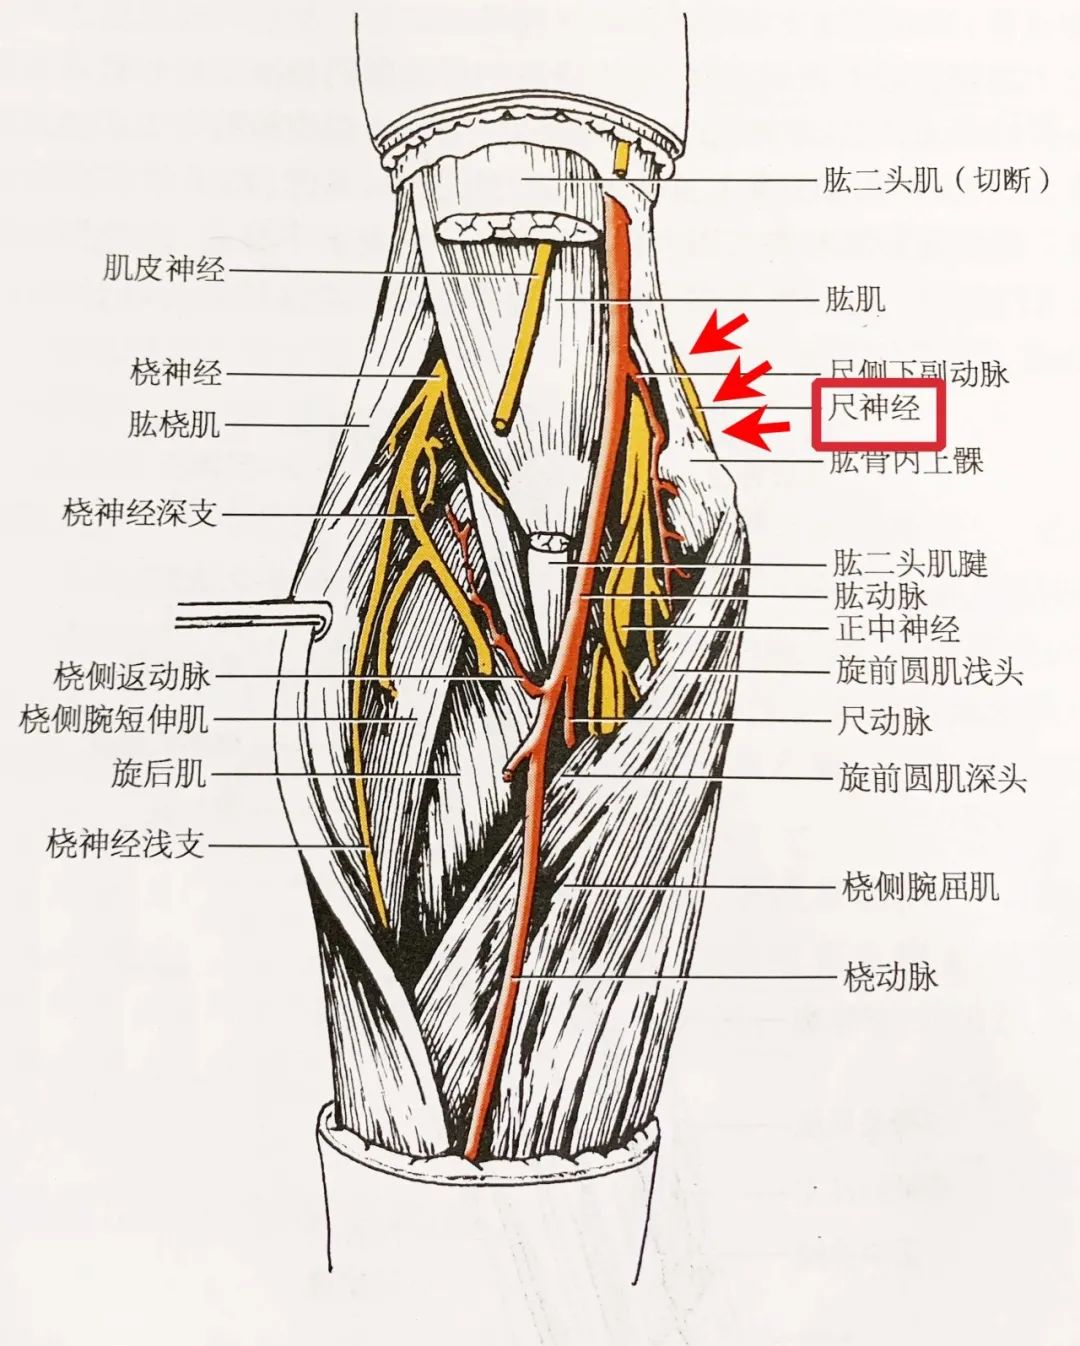 红色箭头示尺神经在尺神经沟及前臂的解剖走形肘管综合征是指尺神